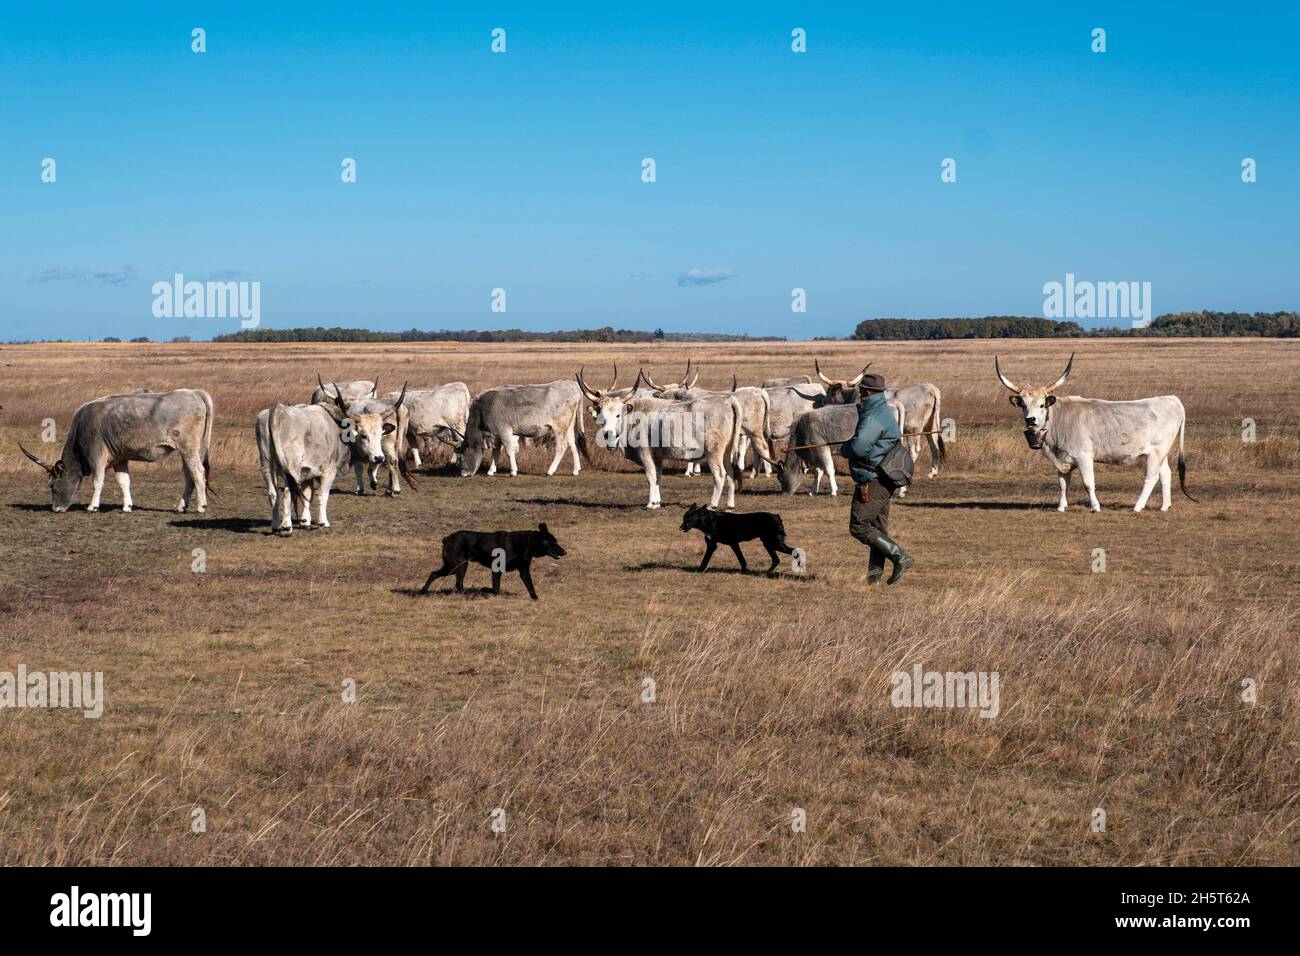 Un pastor asiste a una manada de ganado en el puszta, Parque Nacional de Hortobagy, Hungría Foto de stock